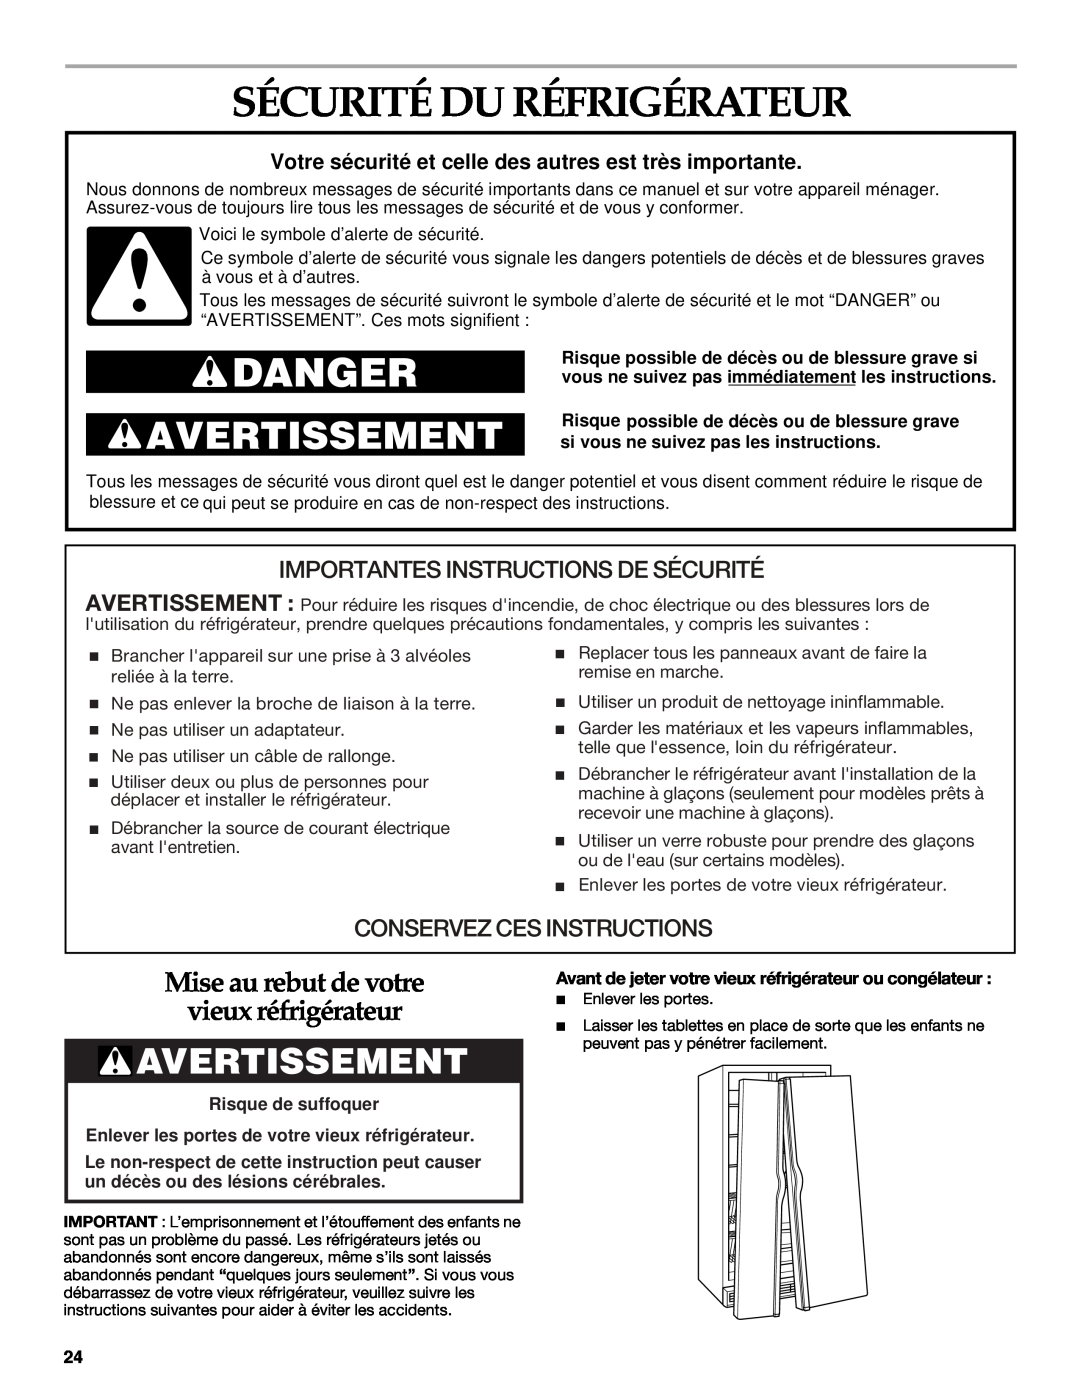 Whirlpool WF-NL300, WF-NL500 Sécurité Du Réfrigérateur, Avertissement, Mise au rebut de votre vieux réfrigérateur, Danger 